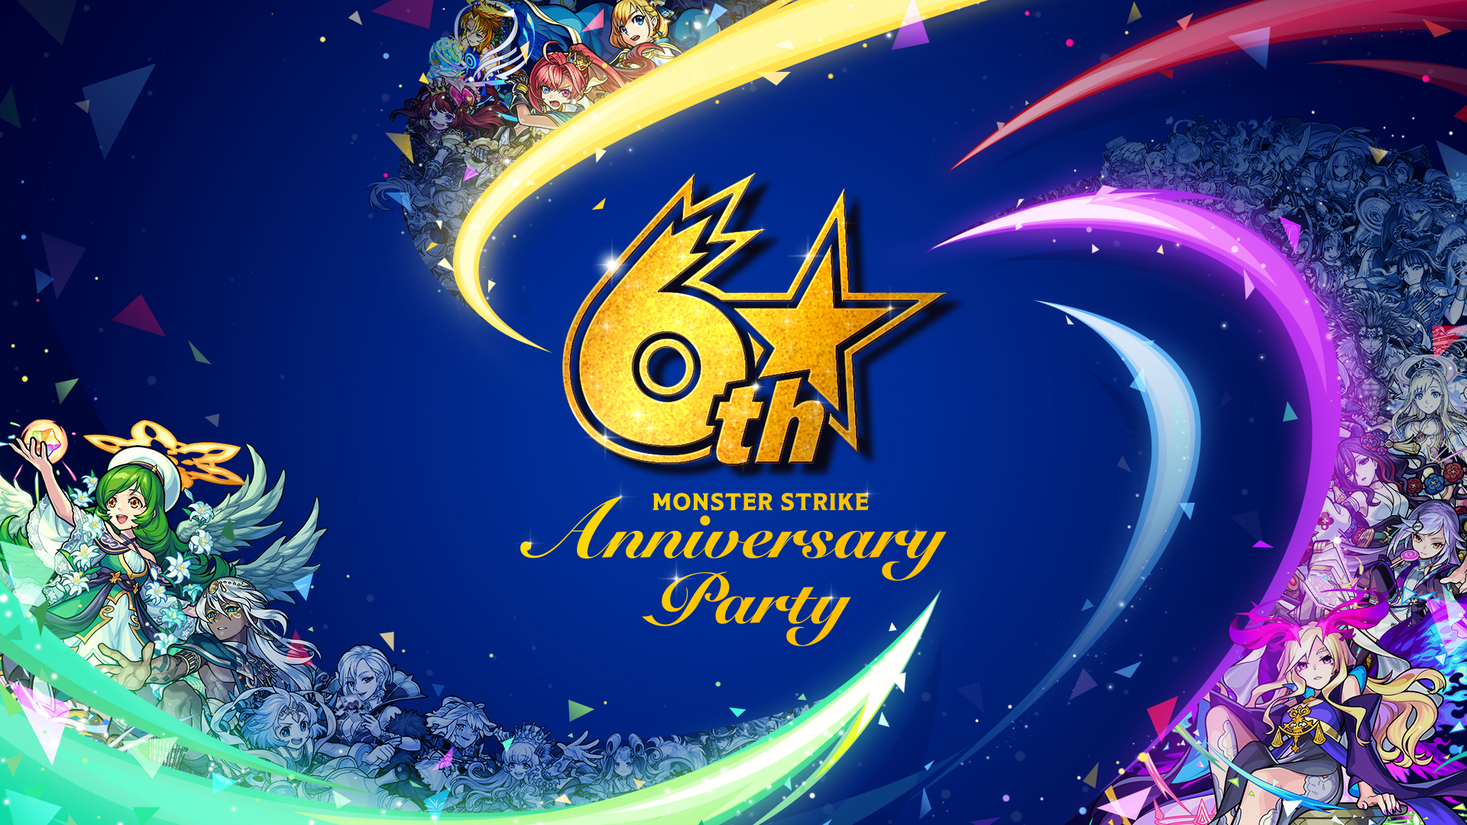 モンスト6周年記念イベント Monster Strike 6th Anniversary Party 10月5日 土 に開催決定 株式会社ミクシィの プレスリリース